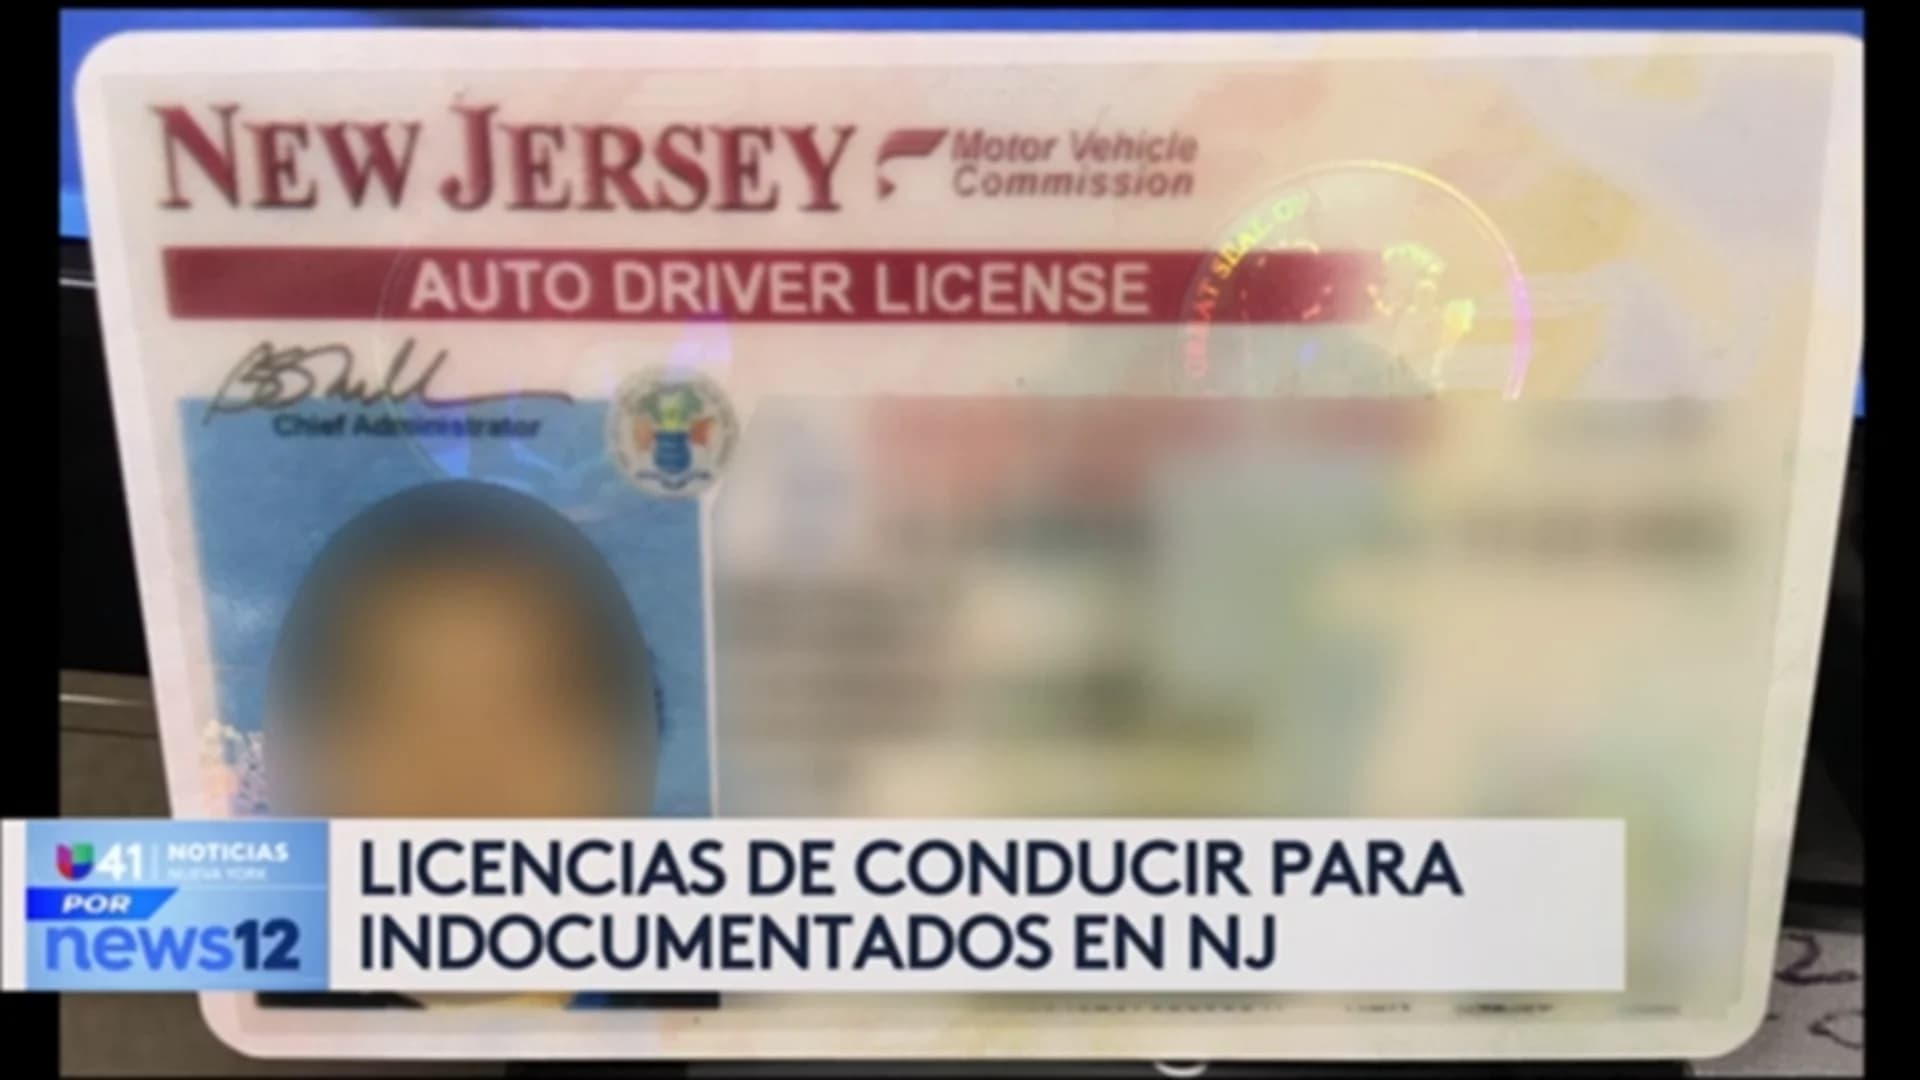 Univision 41 News Brief: Licencias de conducir sin importar su estatus